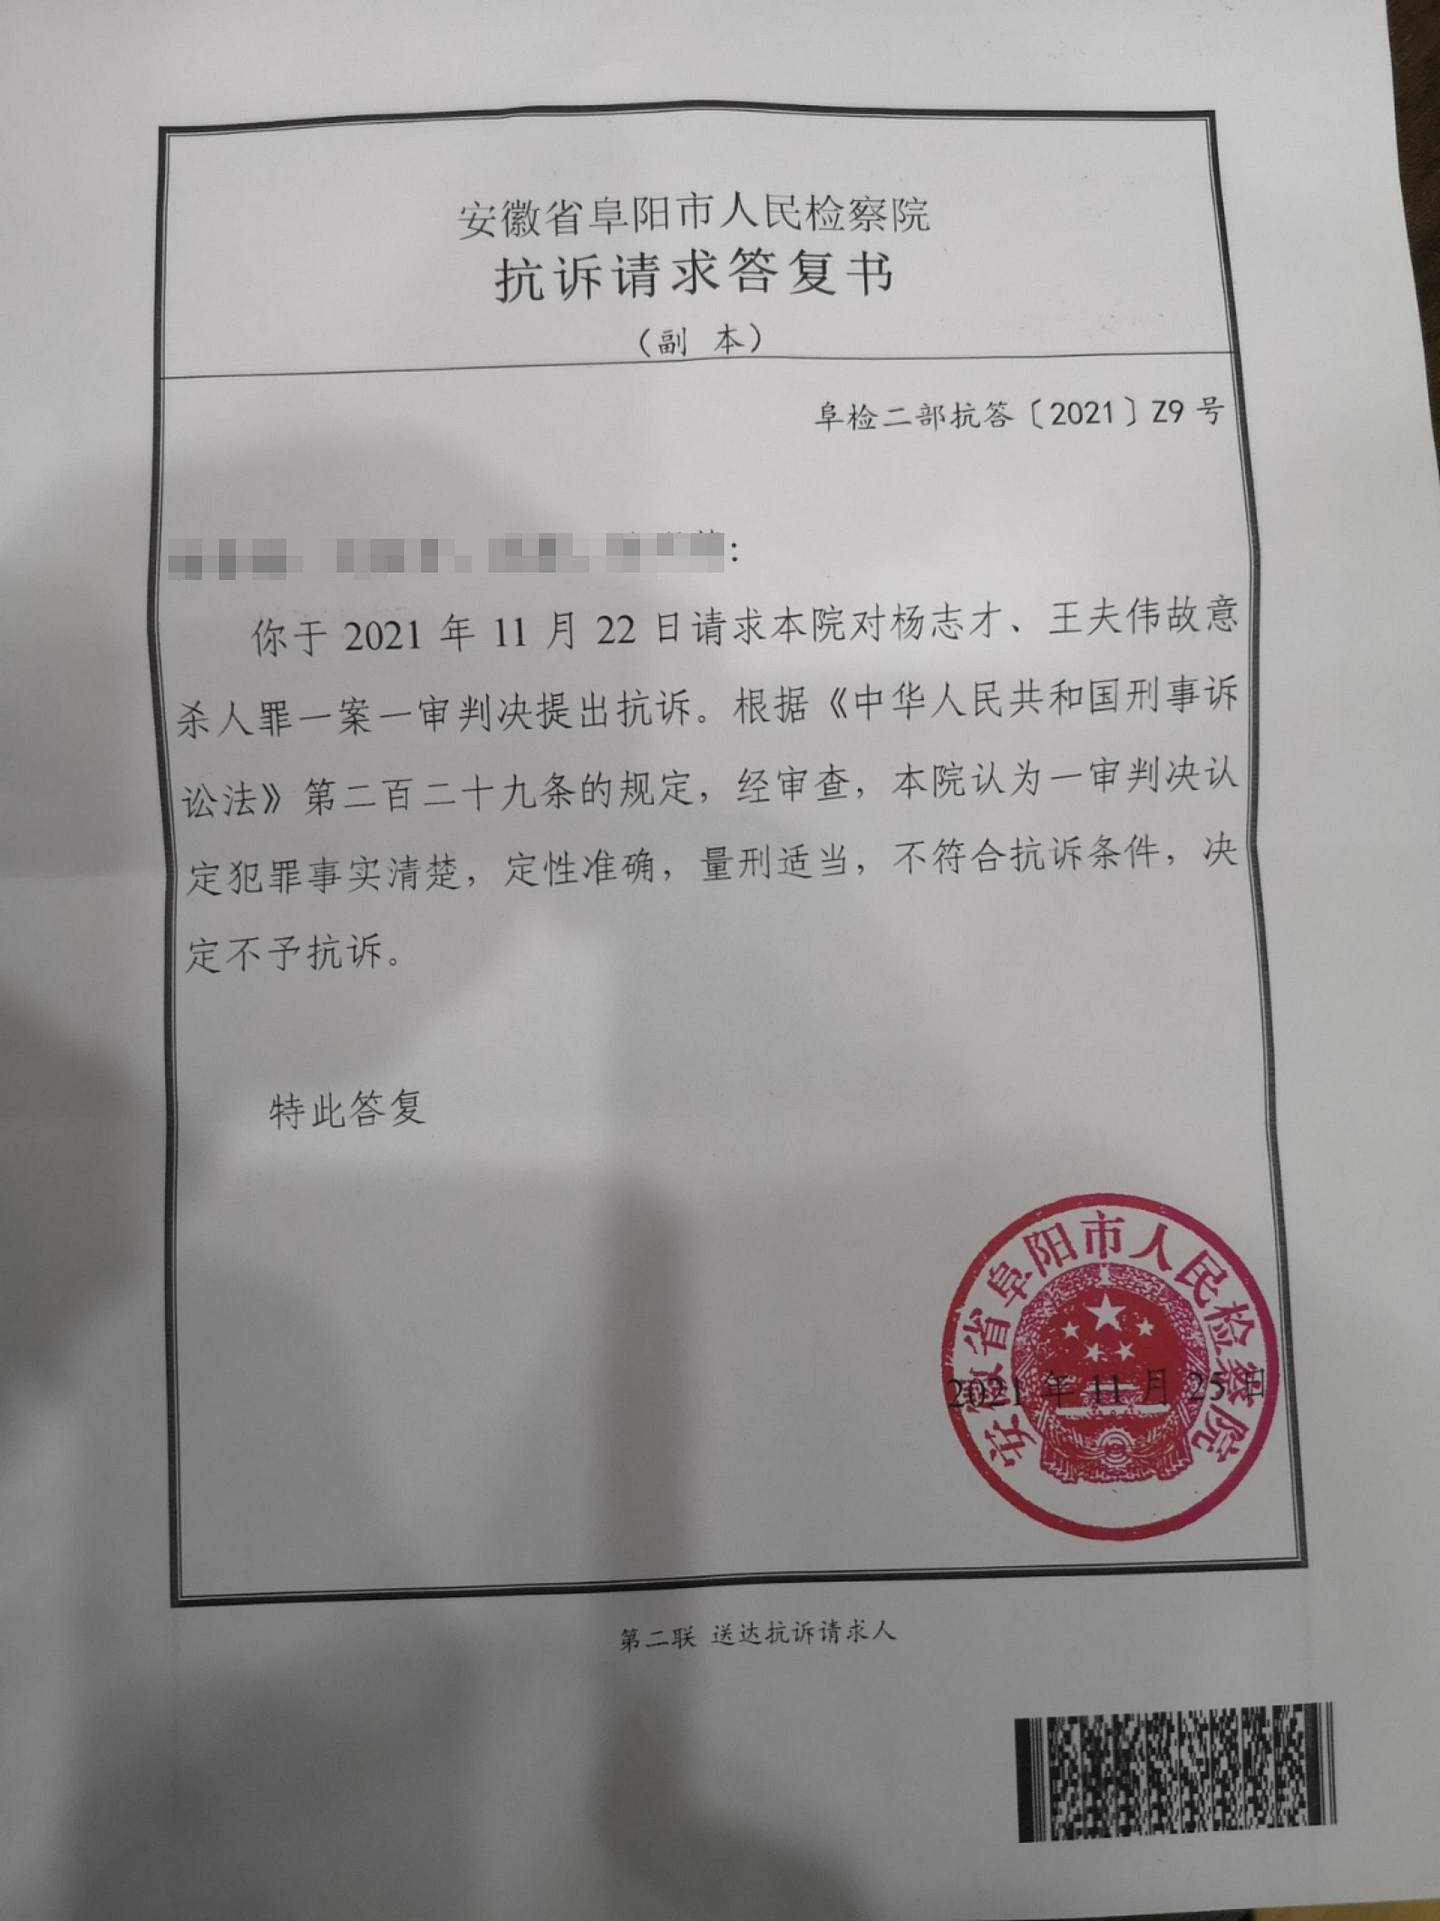 受害人梅丽家属不服阜阳中级人民法院于2021年对杨志才和王夫伟的判决，上诉请求再审。 （人民网梅丽家属提供）